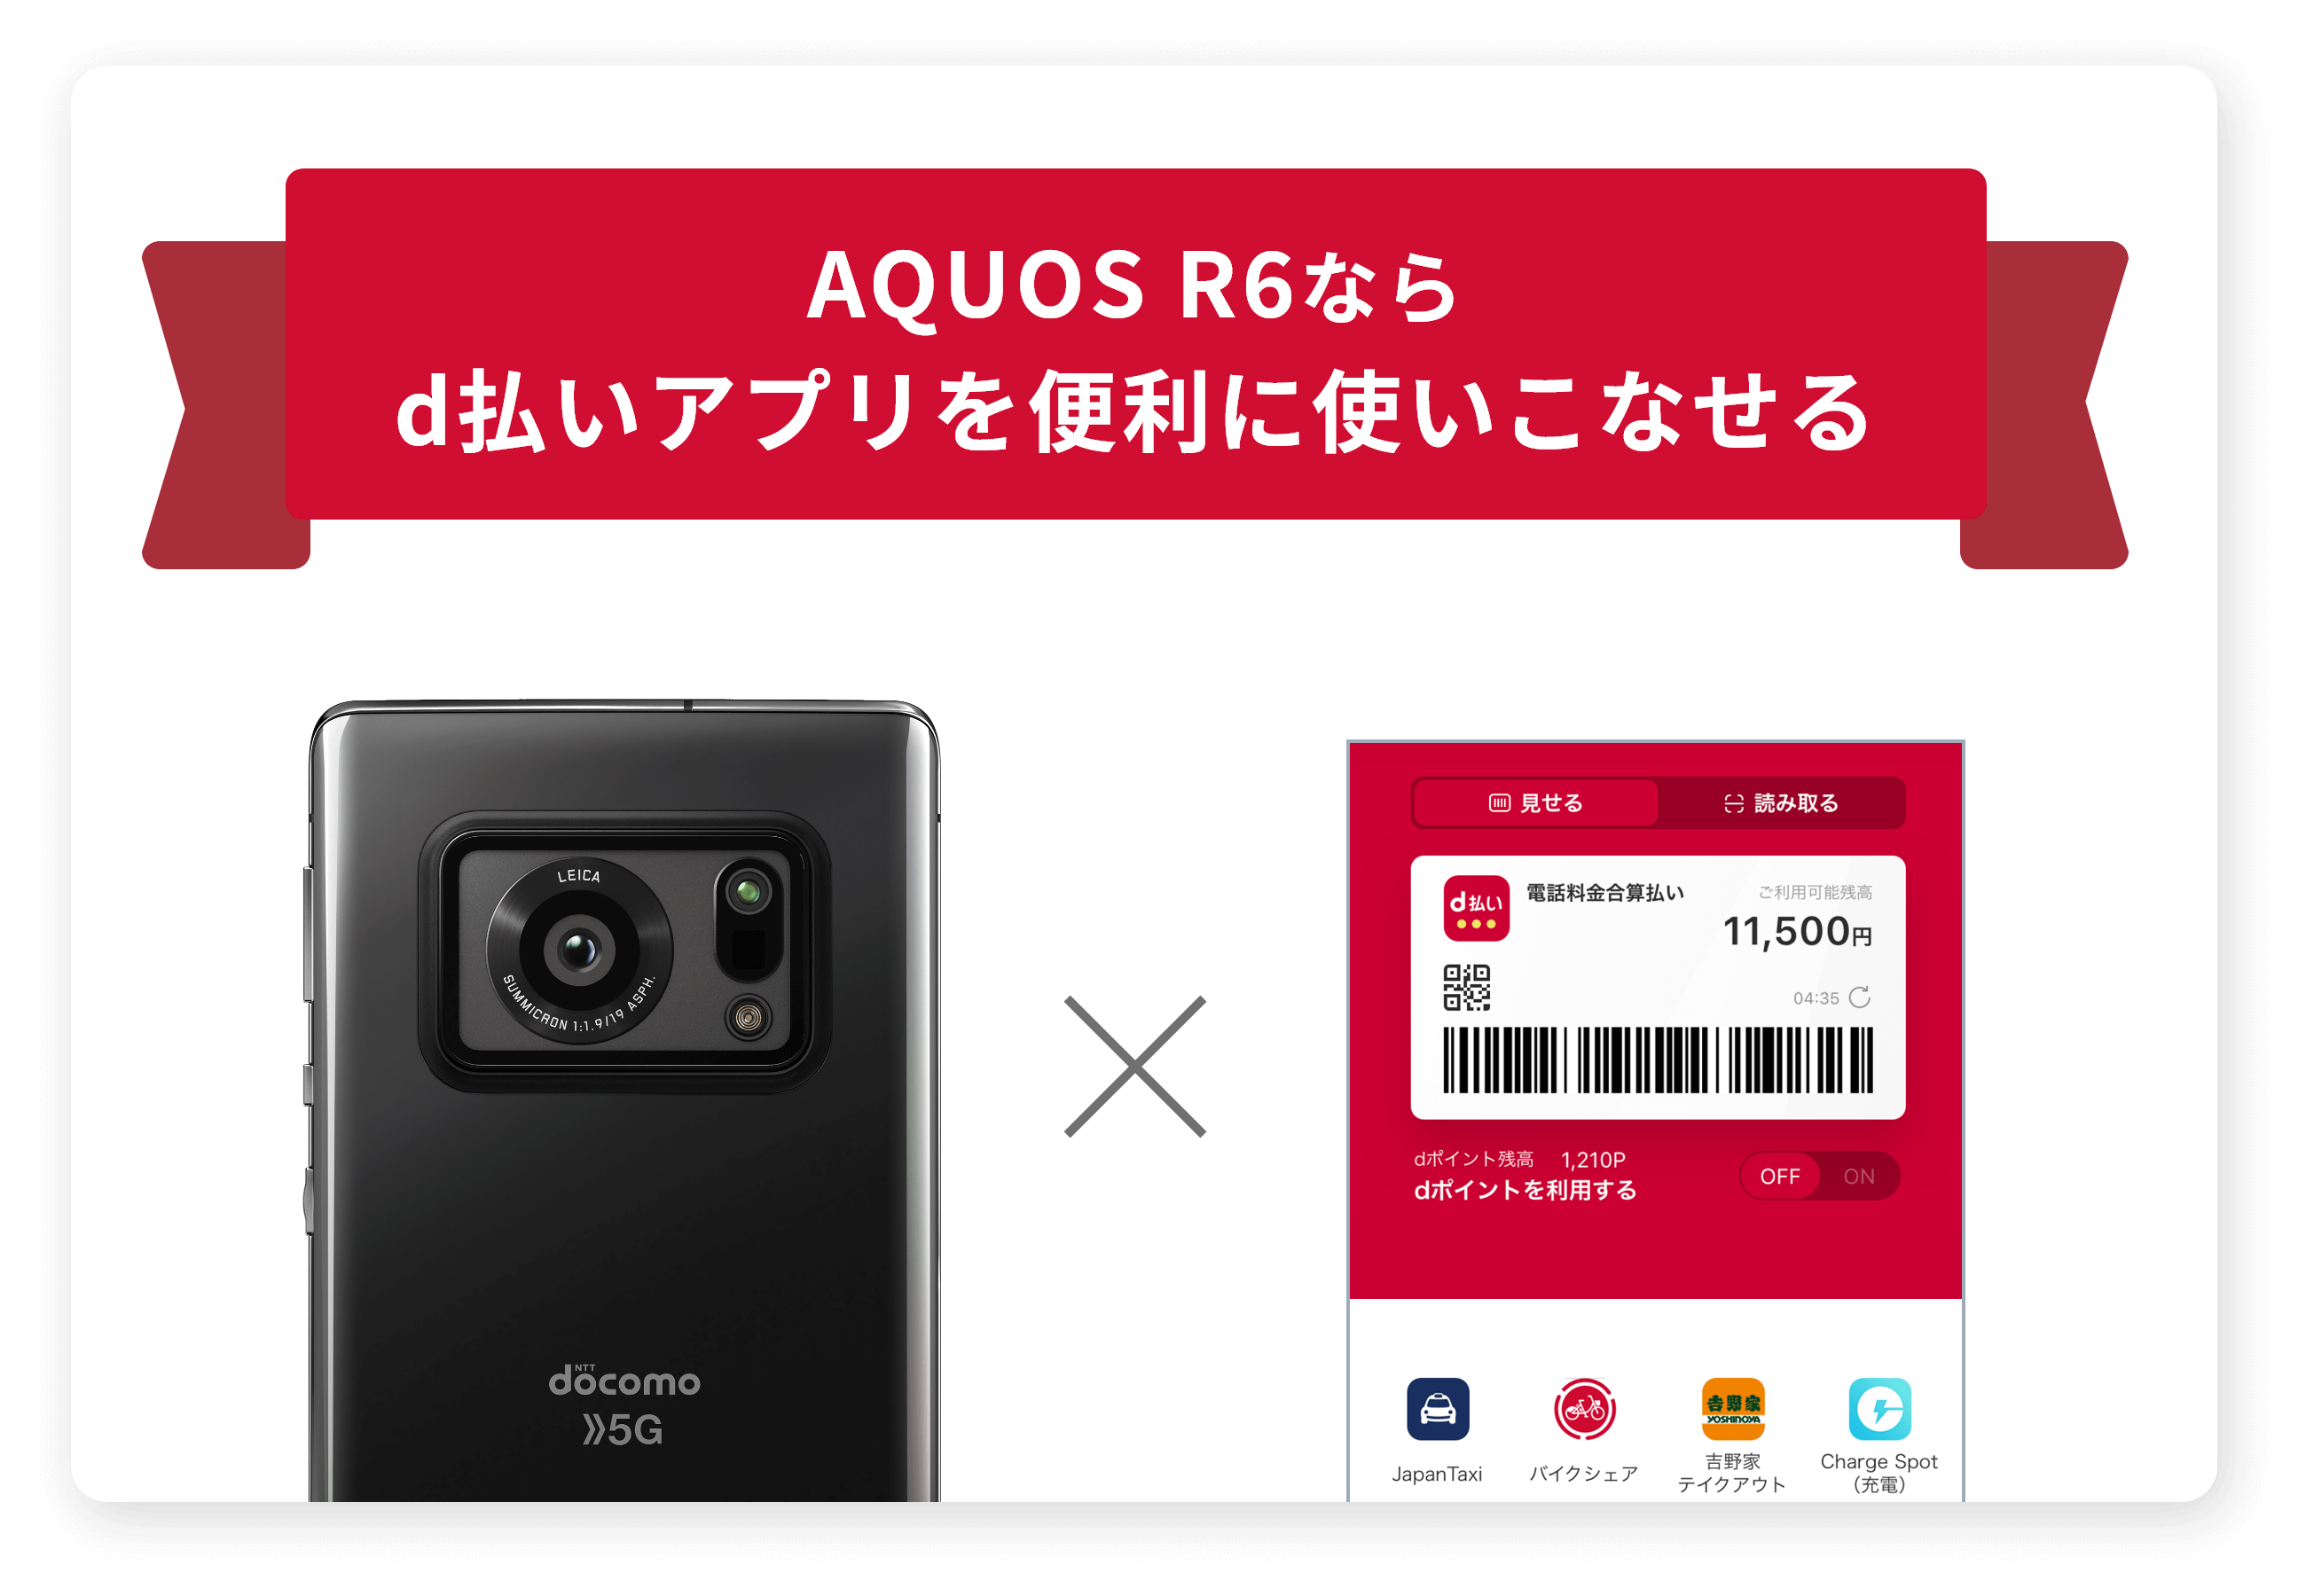 AQUOS R6ならd払いアプリを便利に使いこなせる